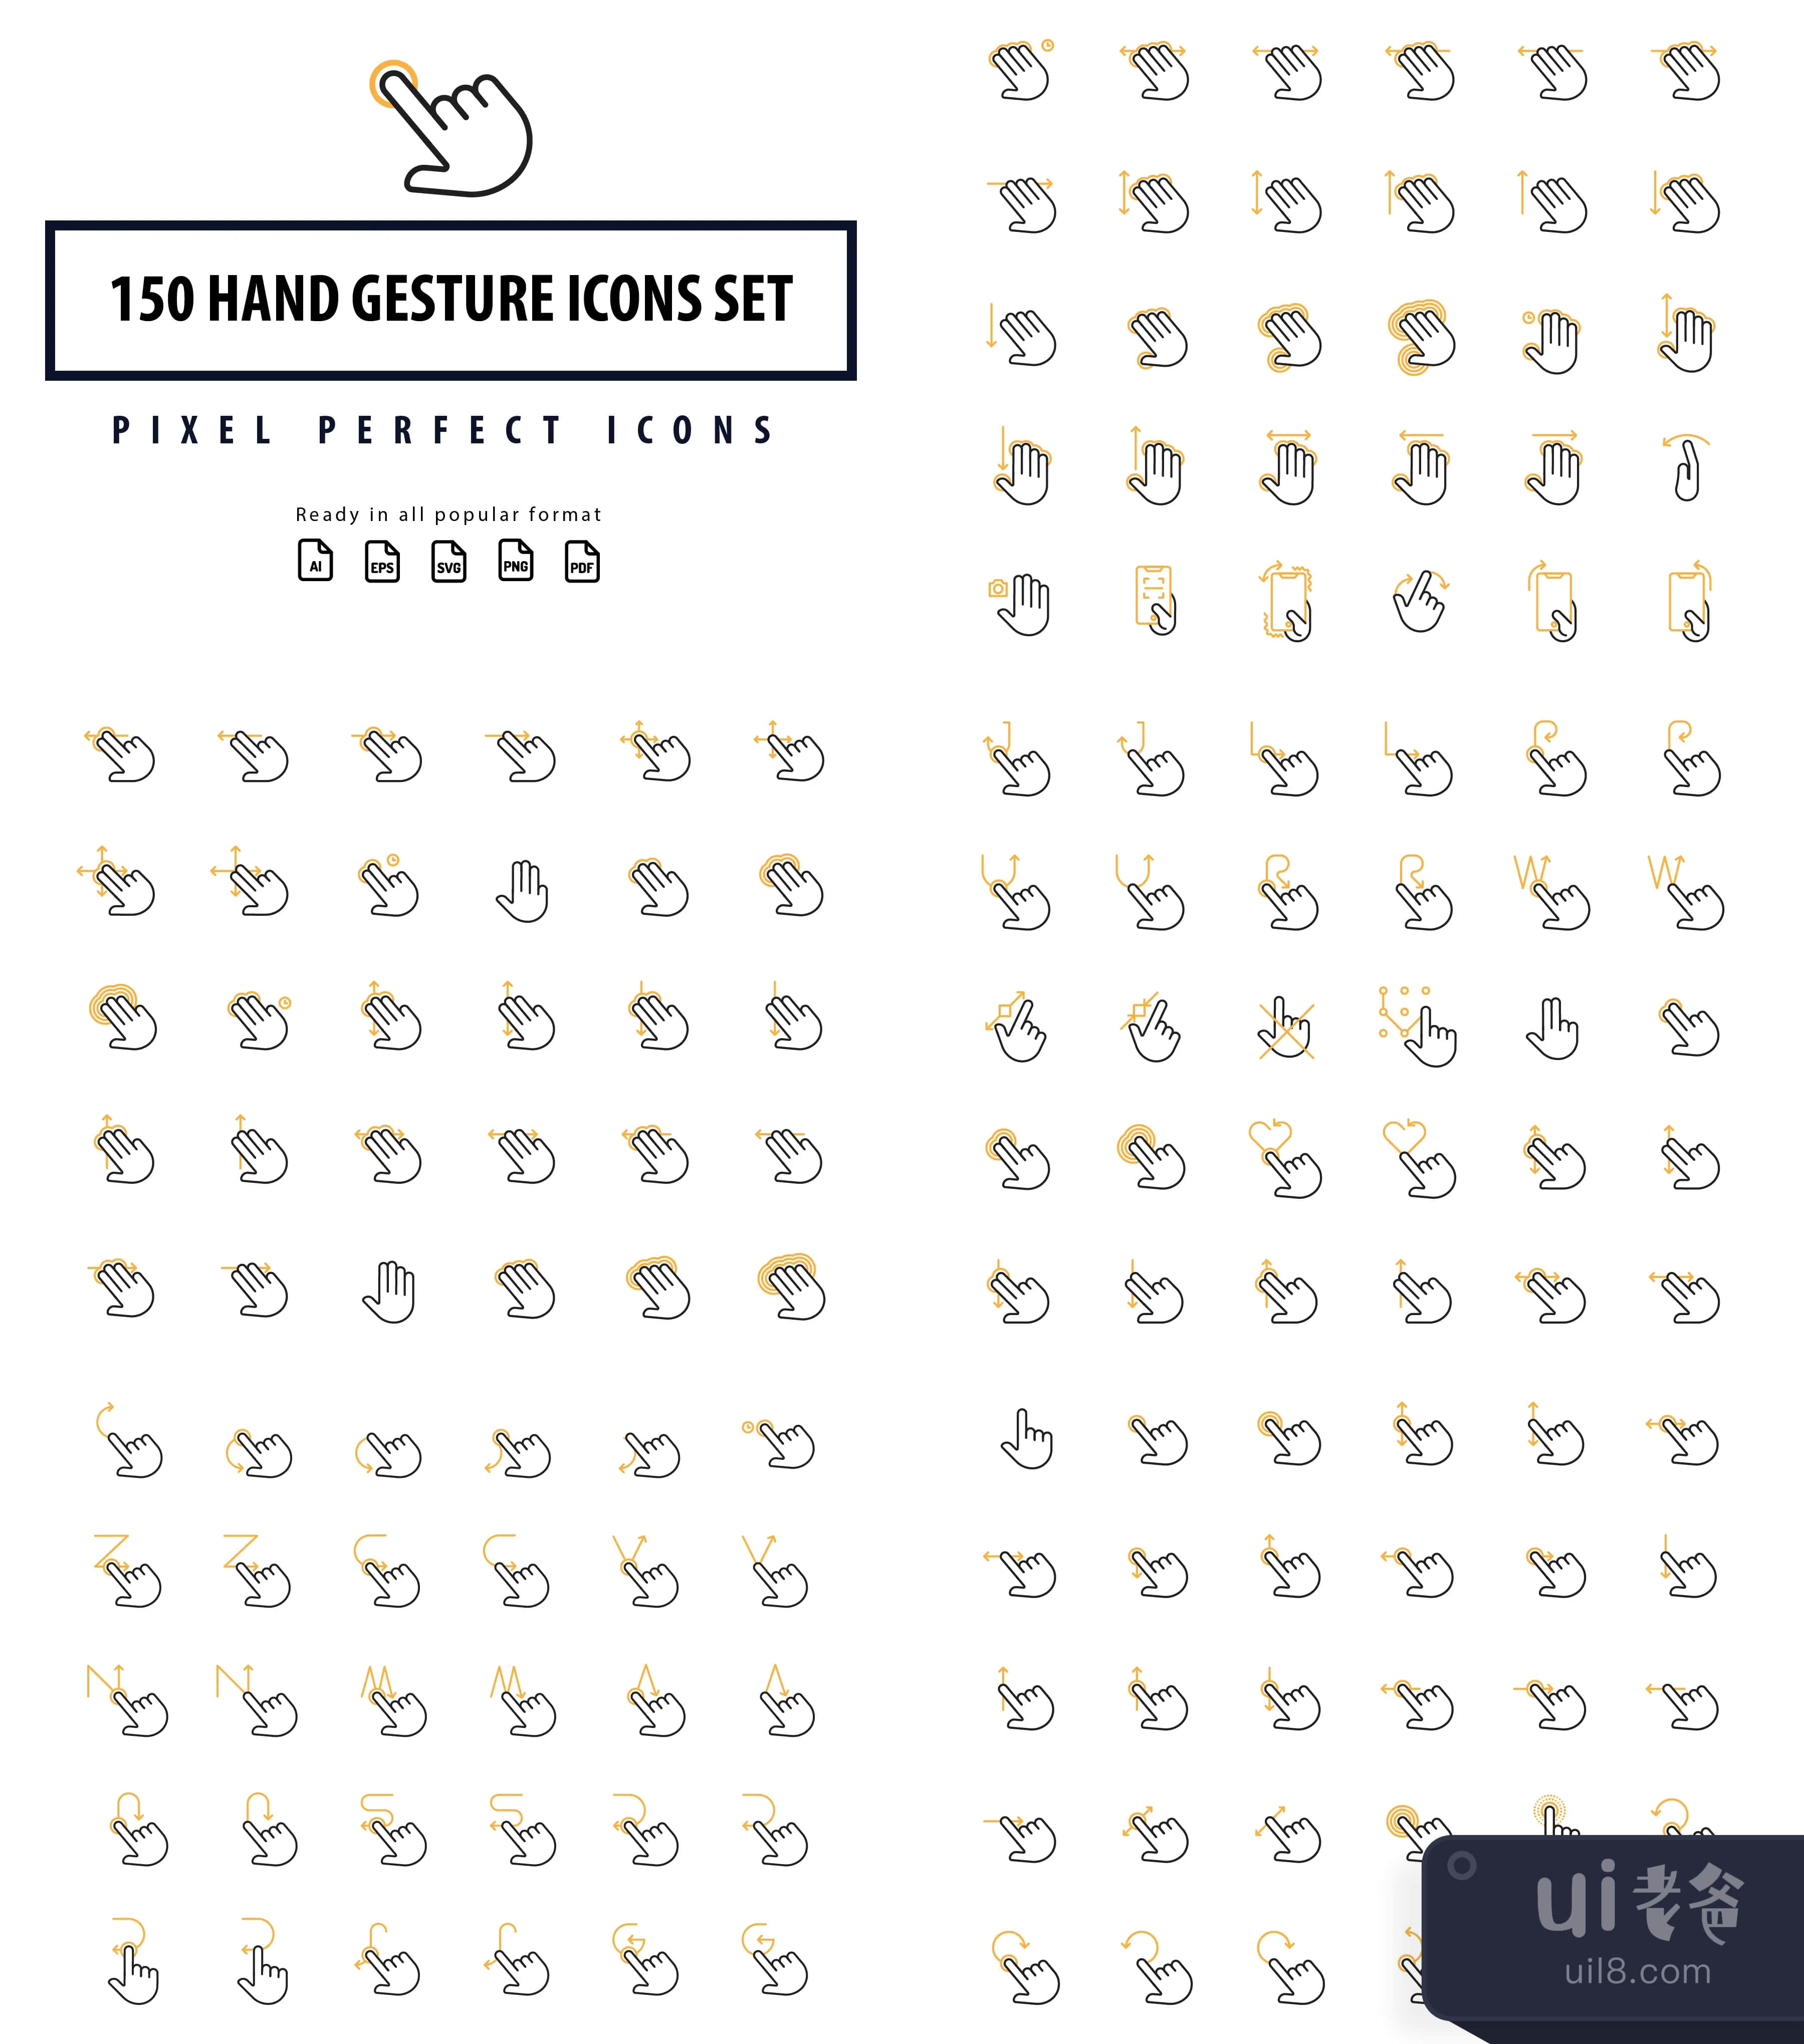 300个手势图标集 (300 Hand Gesture Icon Set)插图1